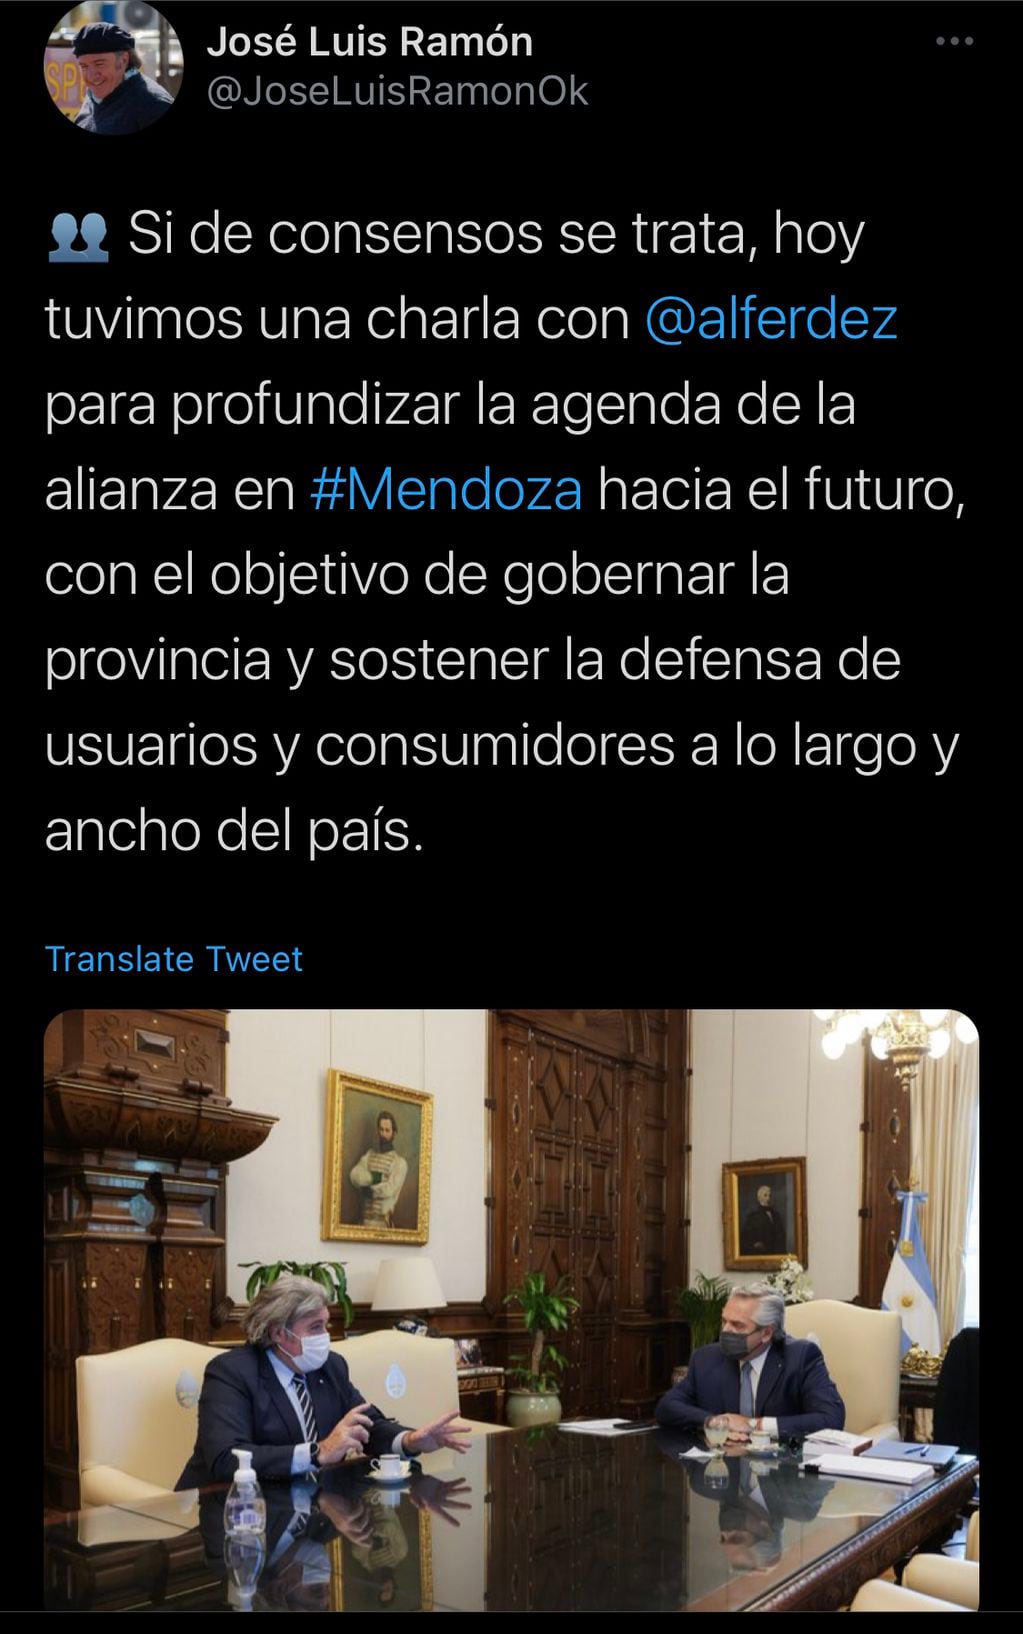 El tweet de Jose Luis Ramón sobre su encuentro con Alberto Fernández.